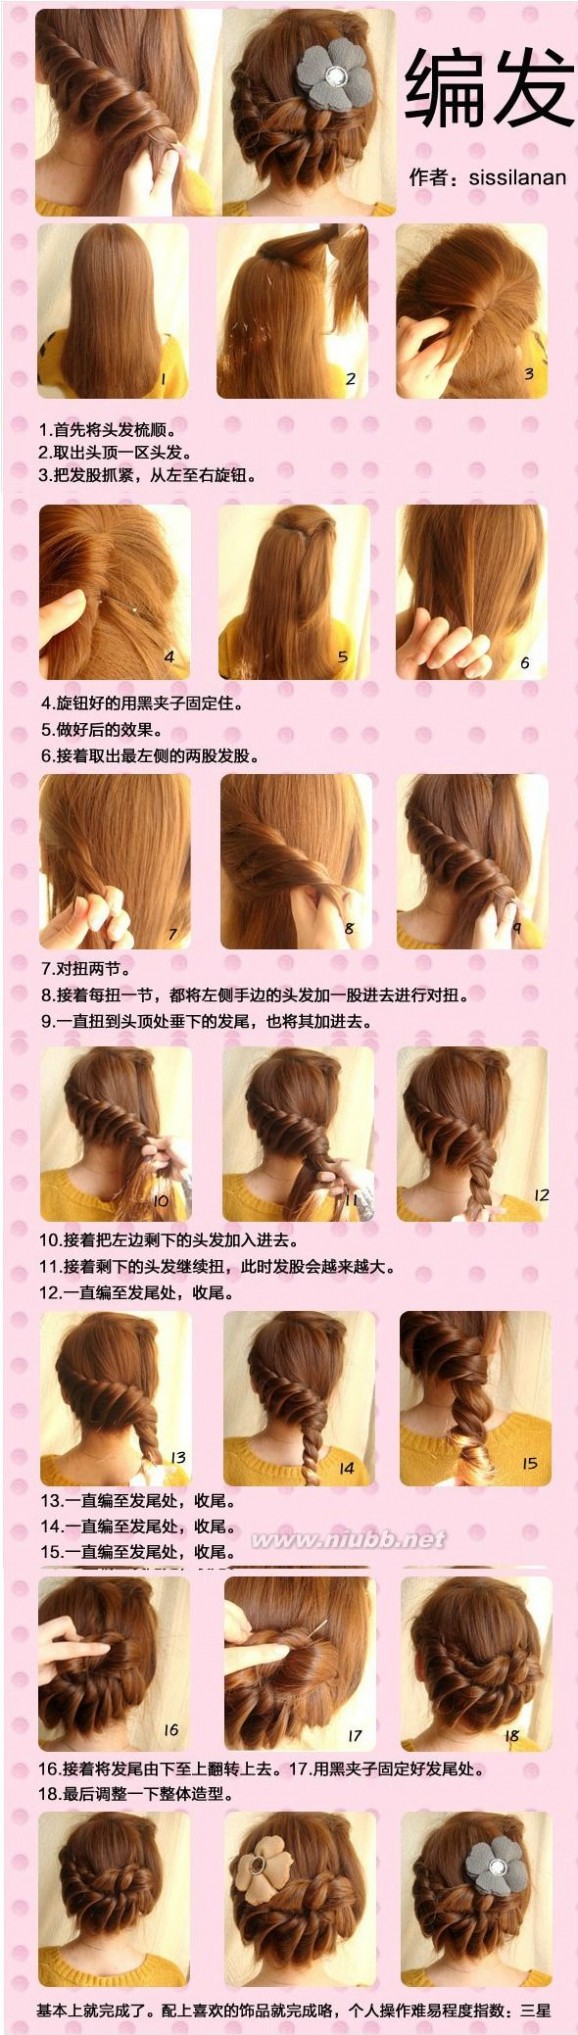 三十种简单好看的扎头发方法图解_怎样梳好看的发型